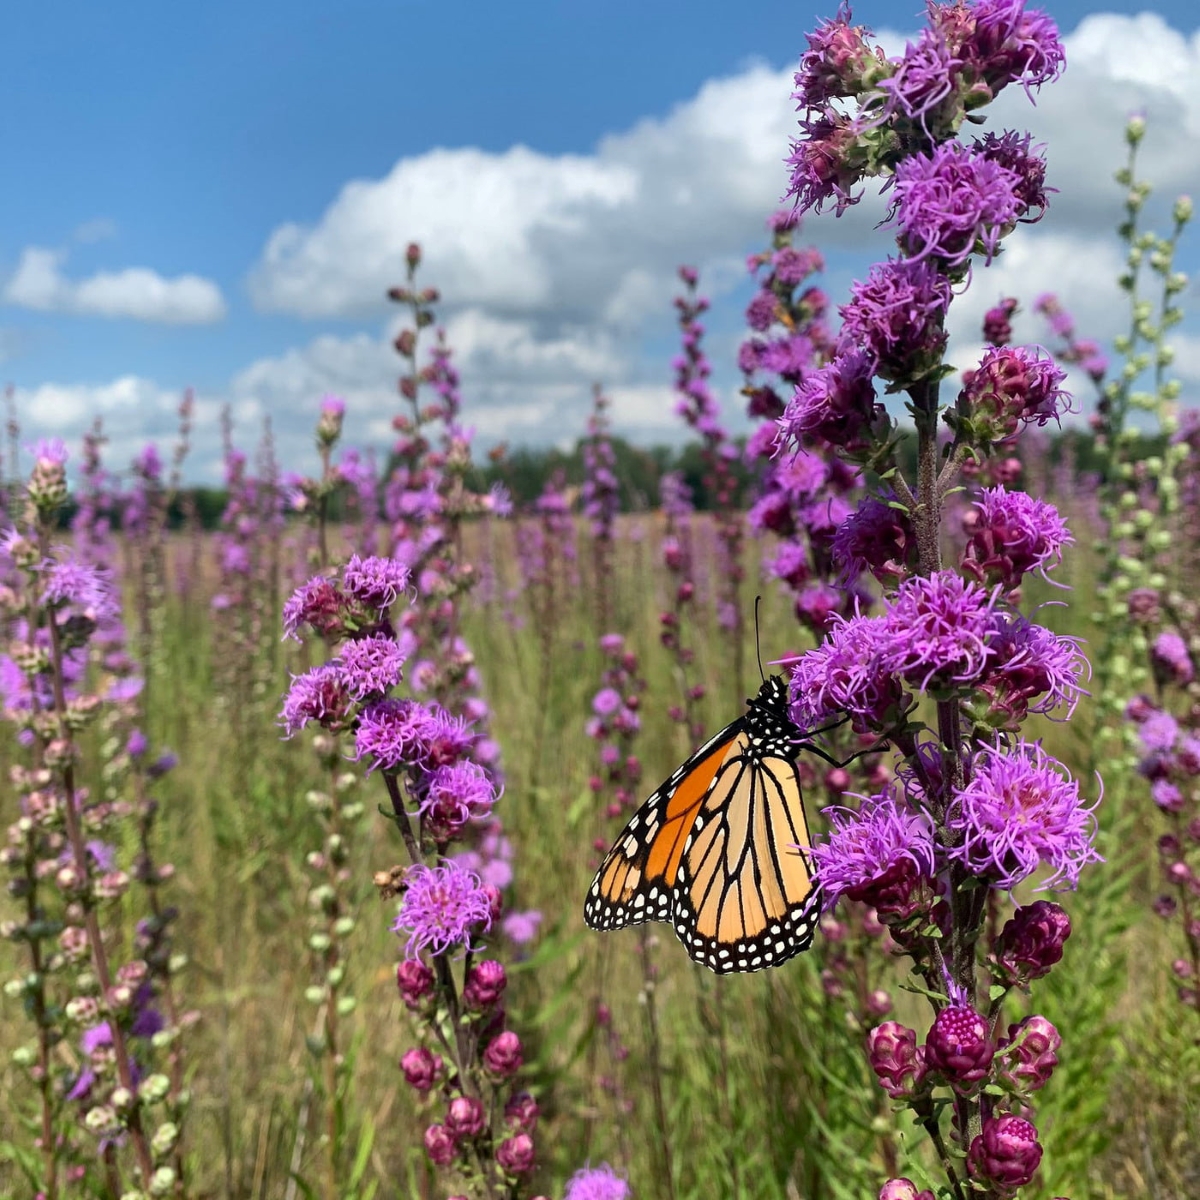 Butterfly on purple flowers in field.